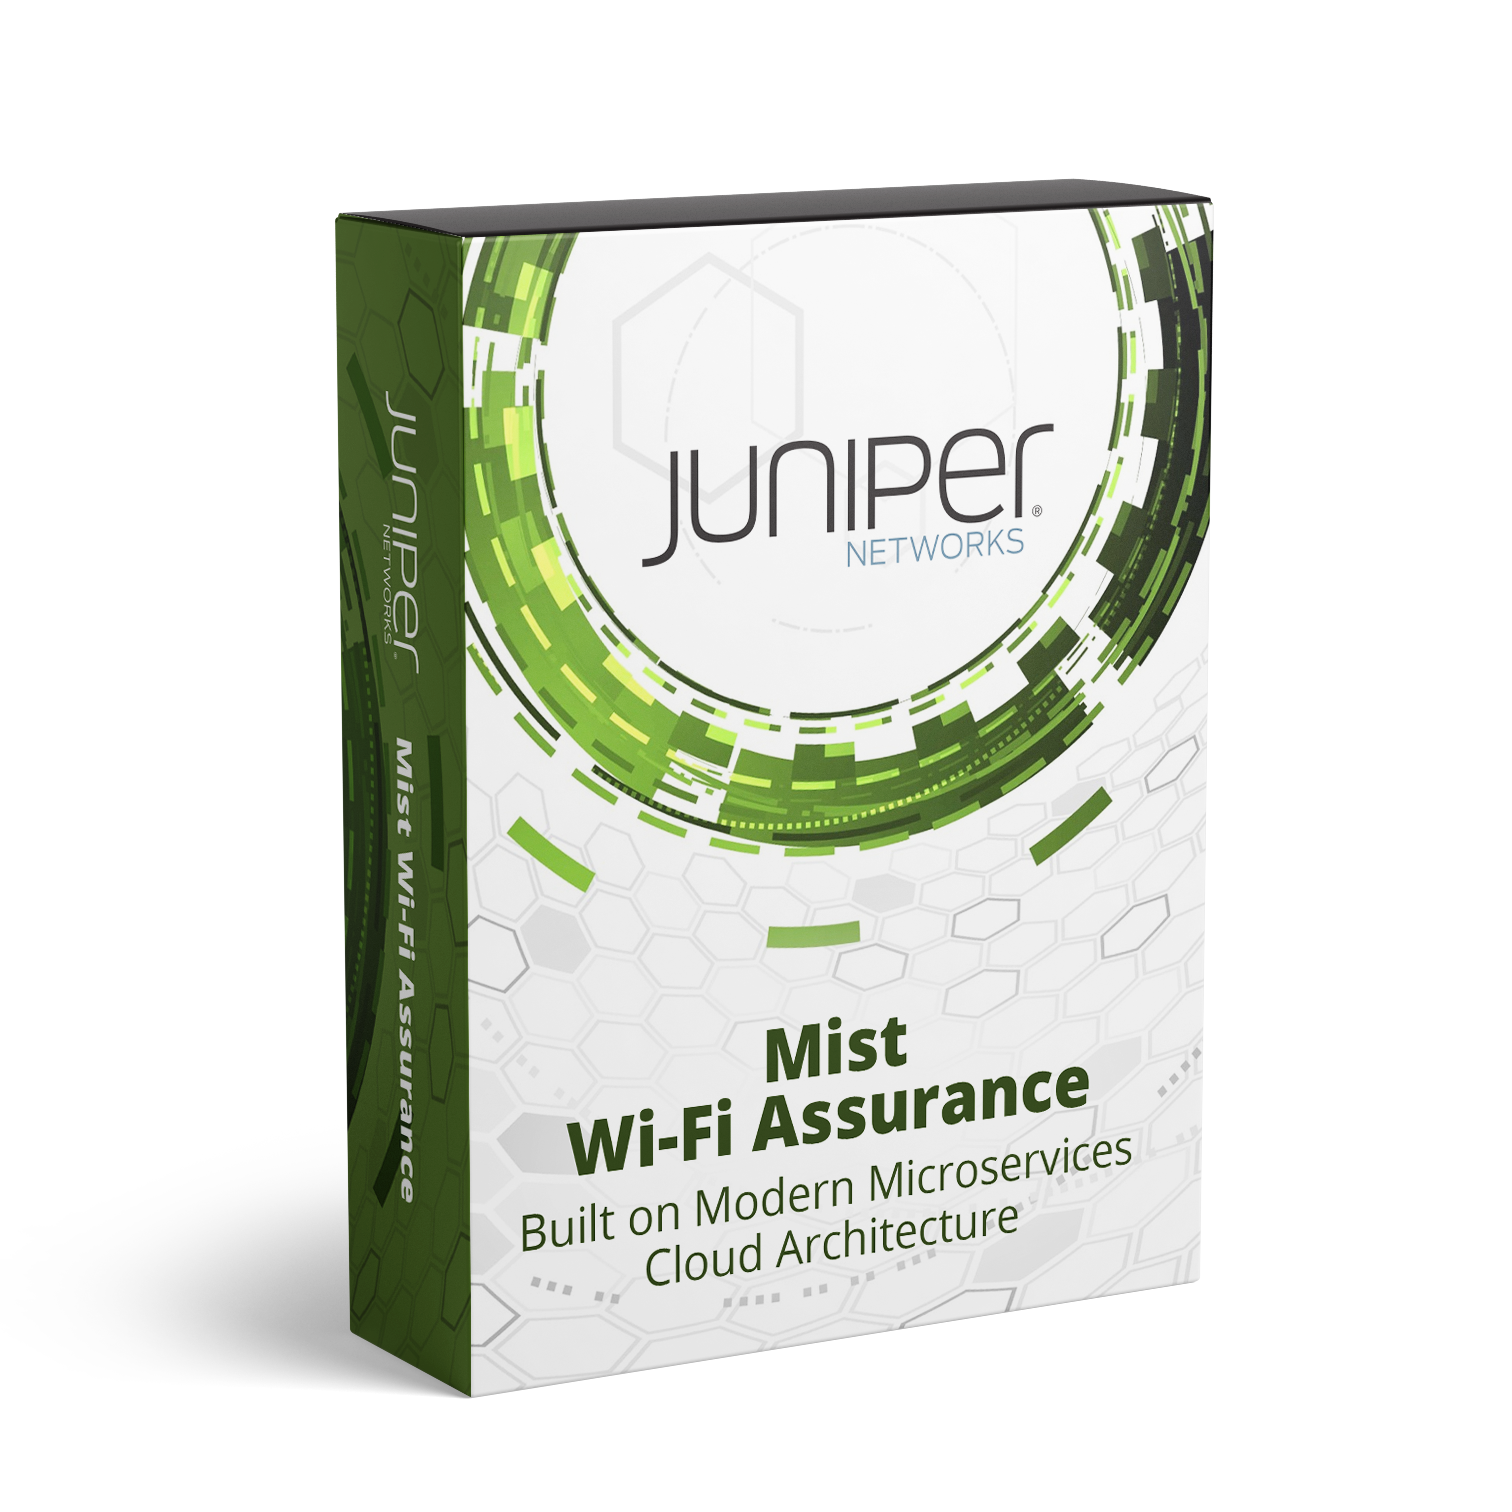 Mist Wi-Fi Assurance